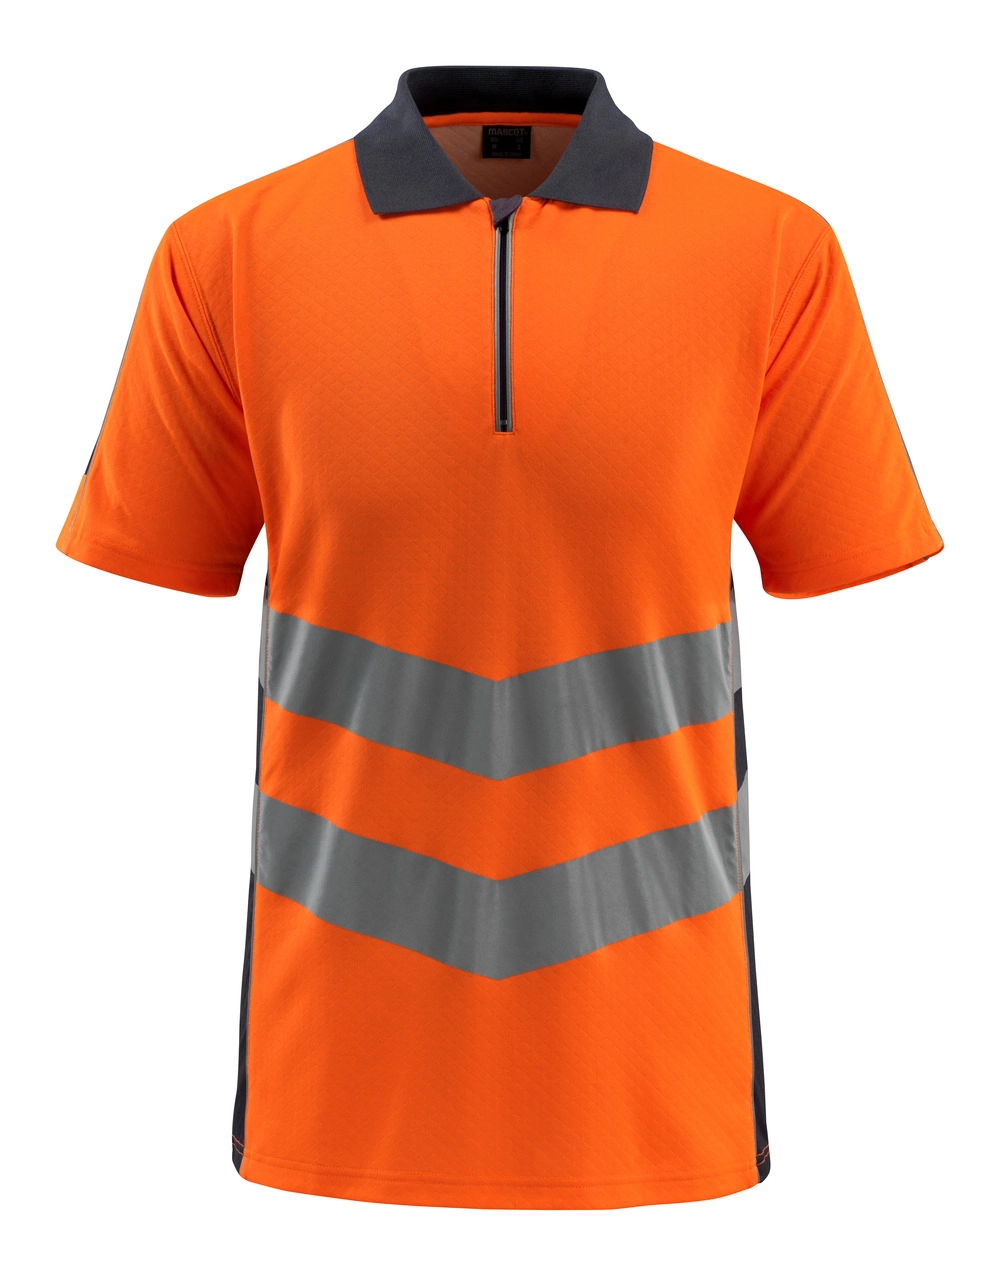 MASCOT® Murton Polo-shirt Größe XL, hi-vis orange/schwarzblau